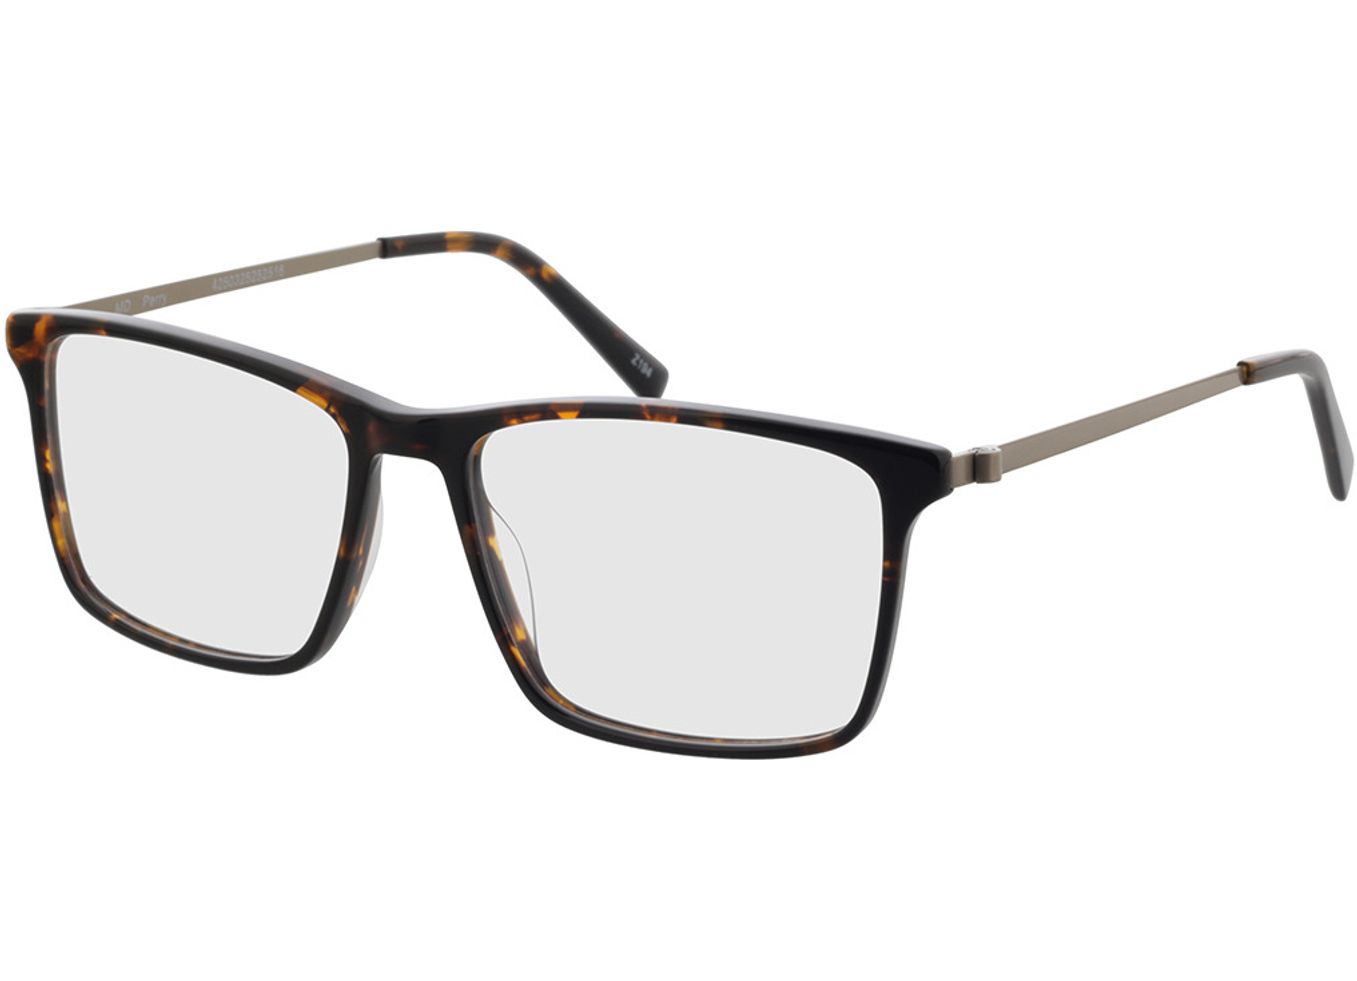 Perry - havanna/silber Gleitsichtbrille, Vollrand, Eckig von Brille24 Collection